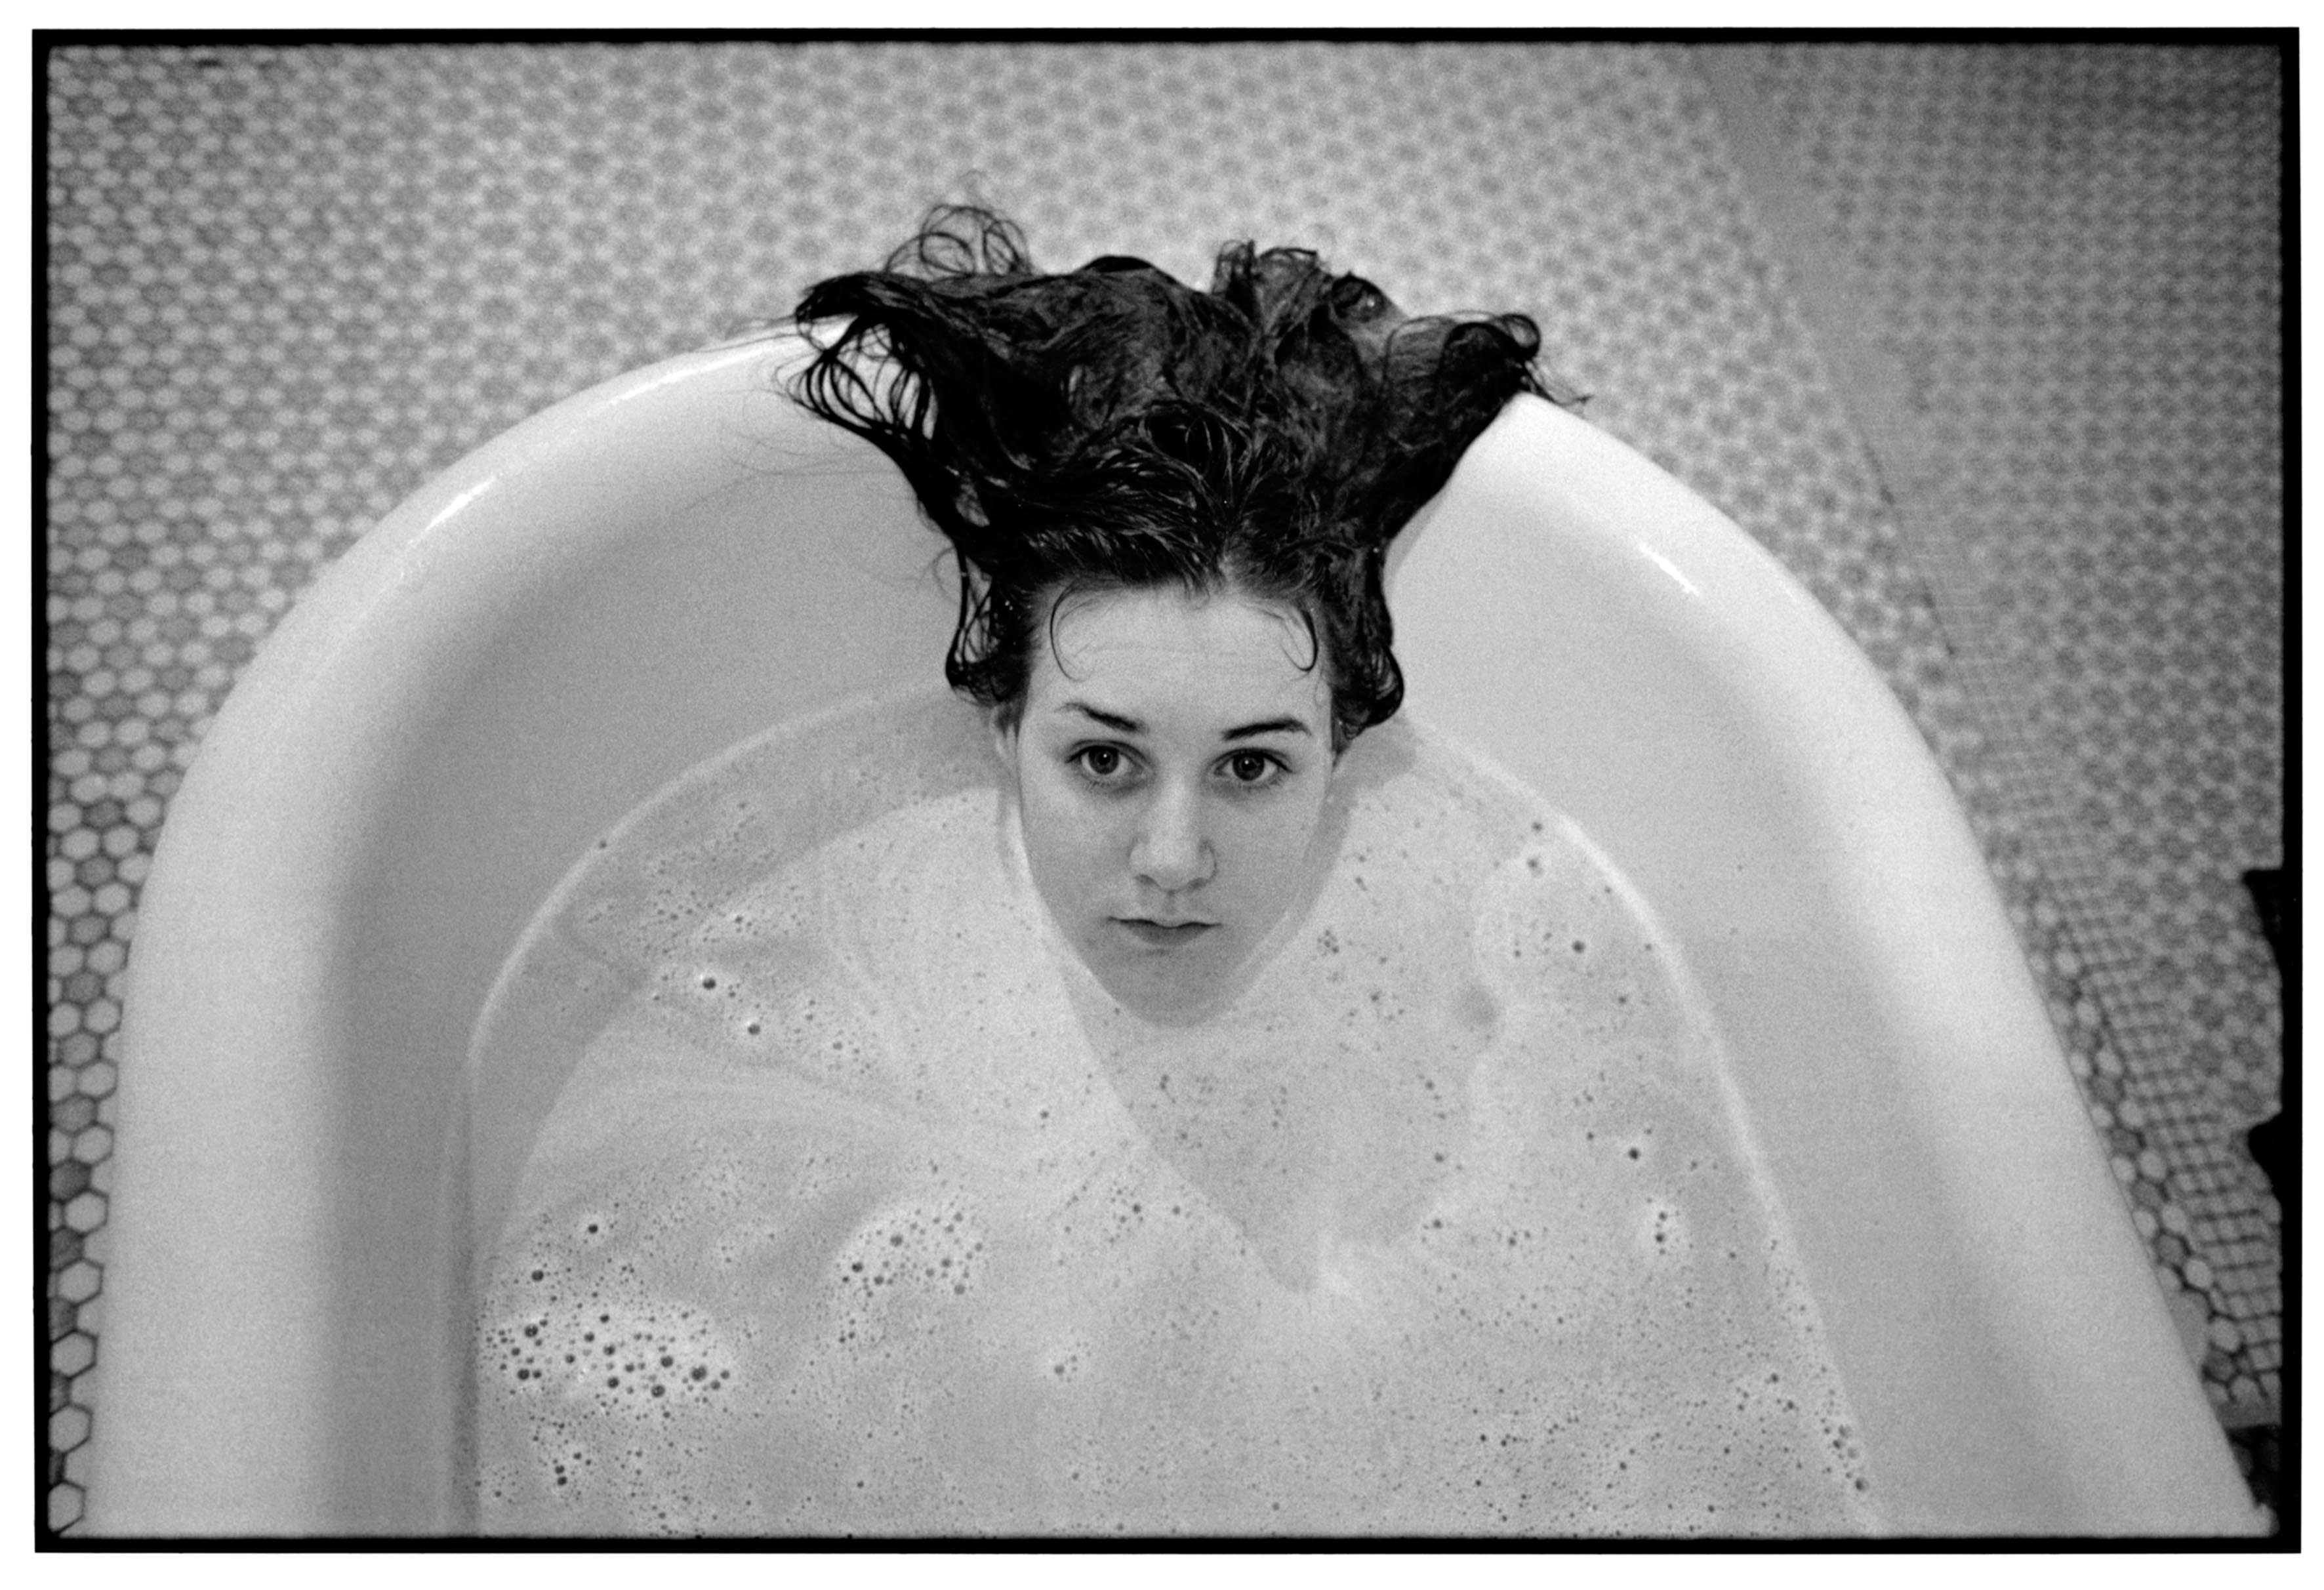 “Laurie in the bathtub of Ward 81, Oregon State Hospital.” 182 Salem, Oregon, 1976. © Mary Ellen Mark Foundation.